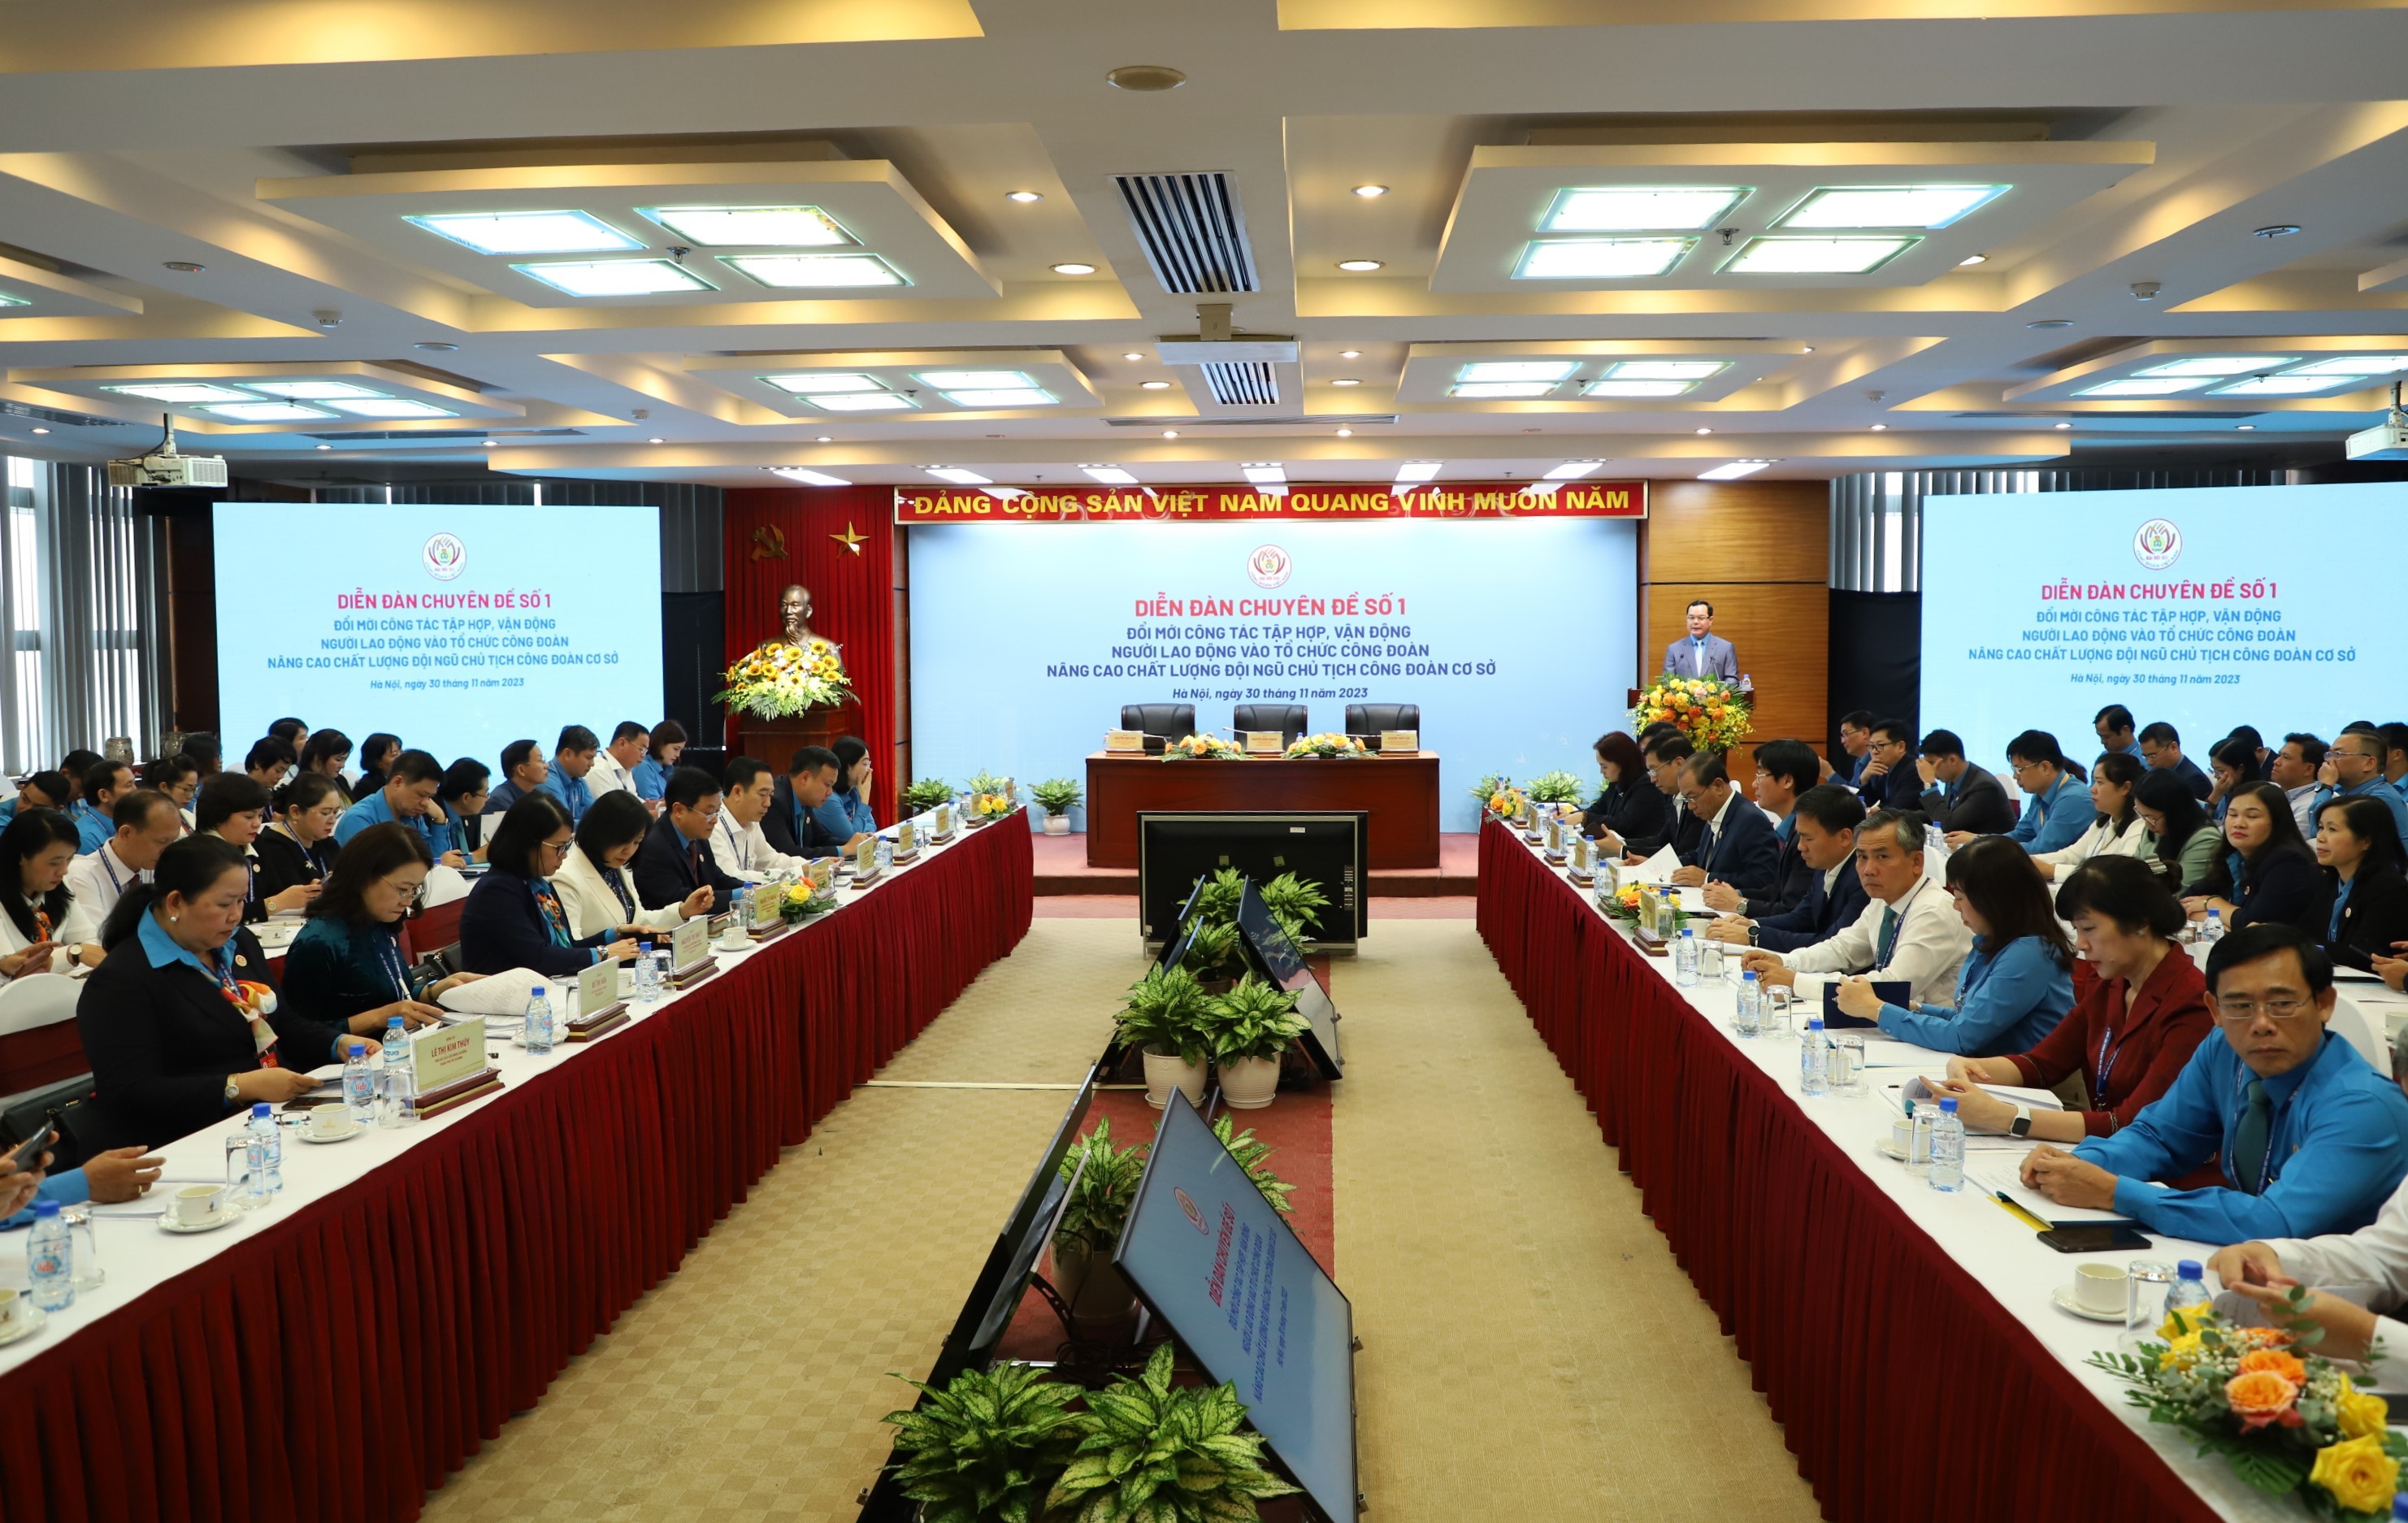 Hiến kế để đến năm 2028 tổ chức Công đoàn Việt Nam có 15 triệu đoàn viên